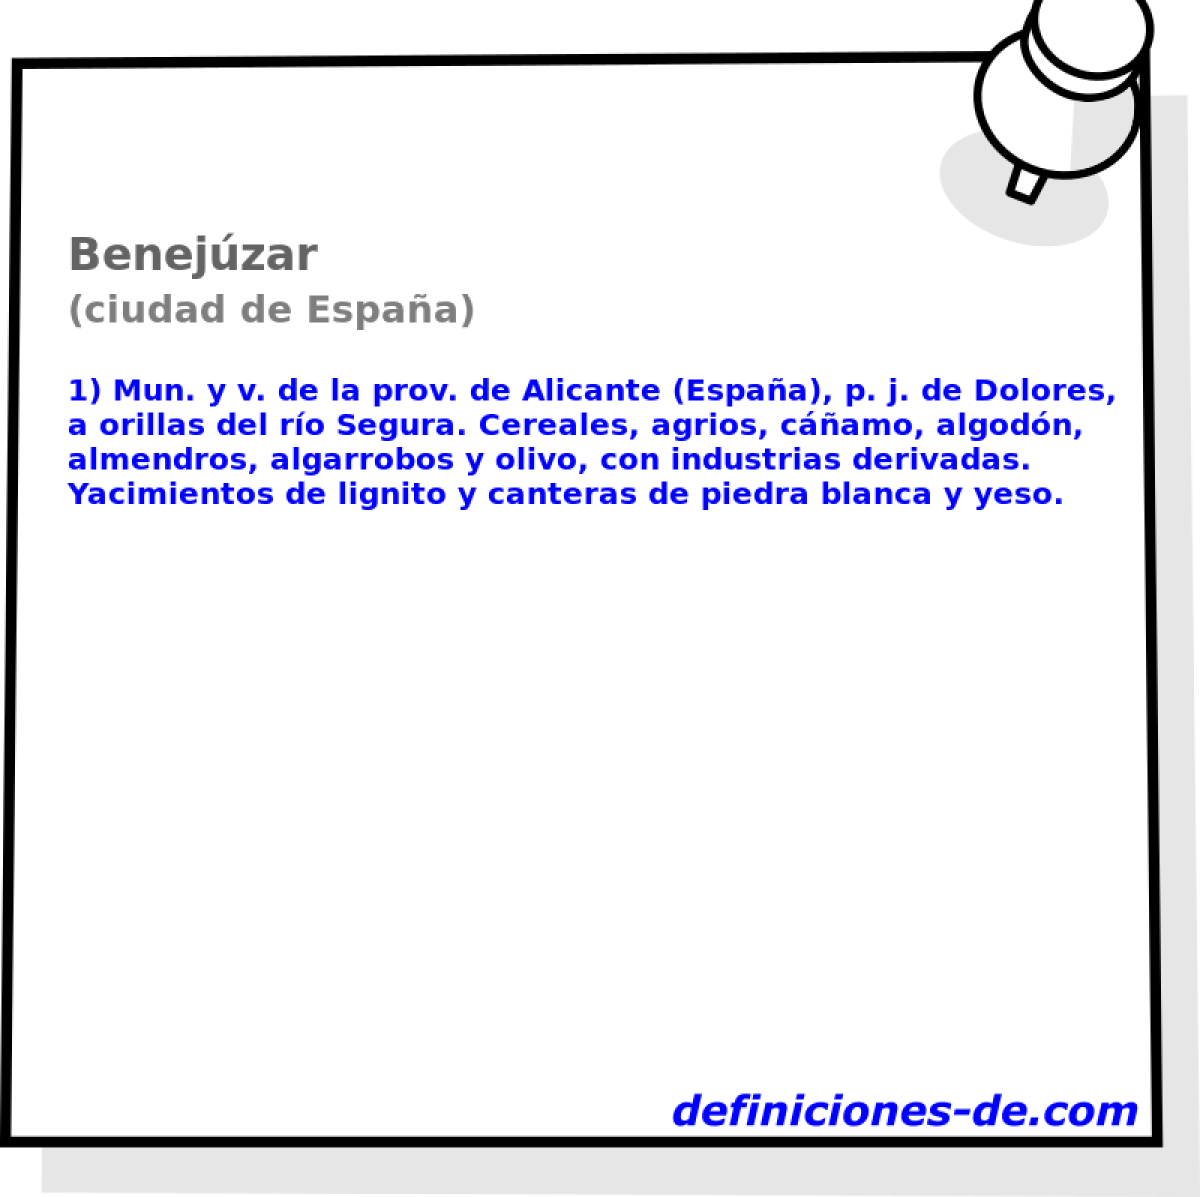 Benejzar (ciudad de Espaa)